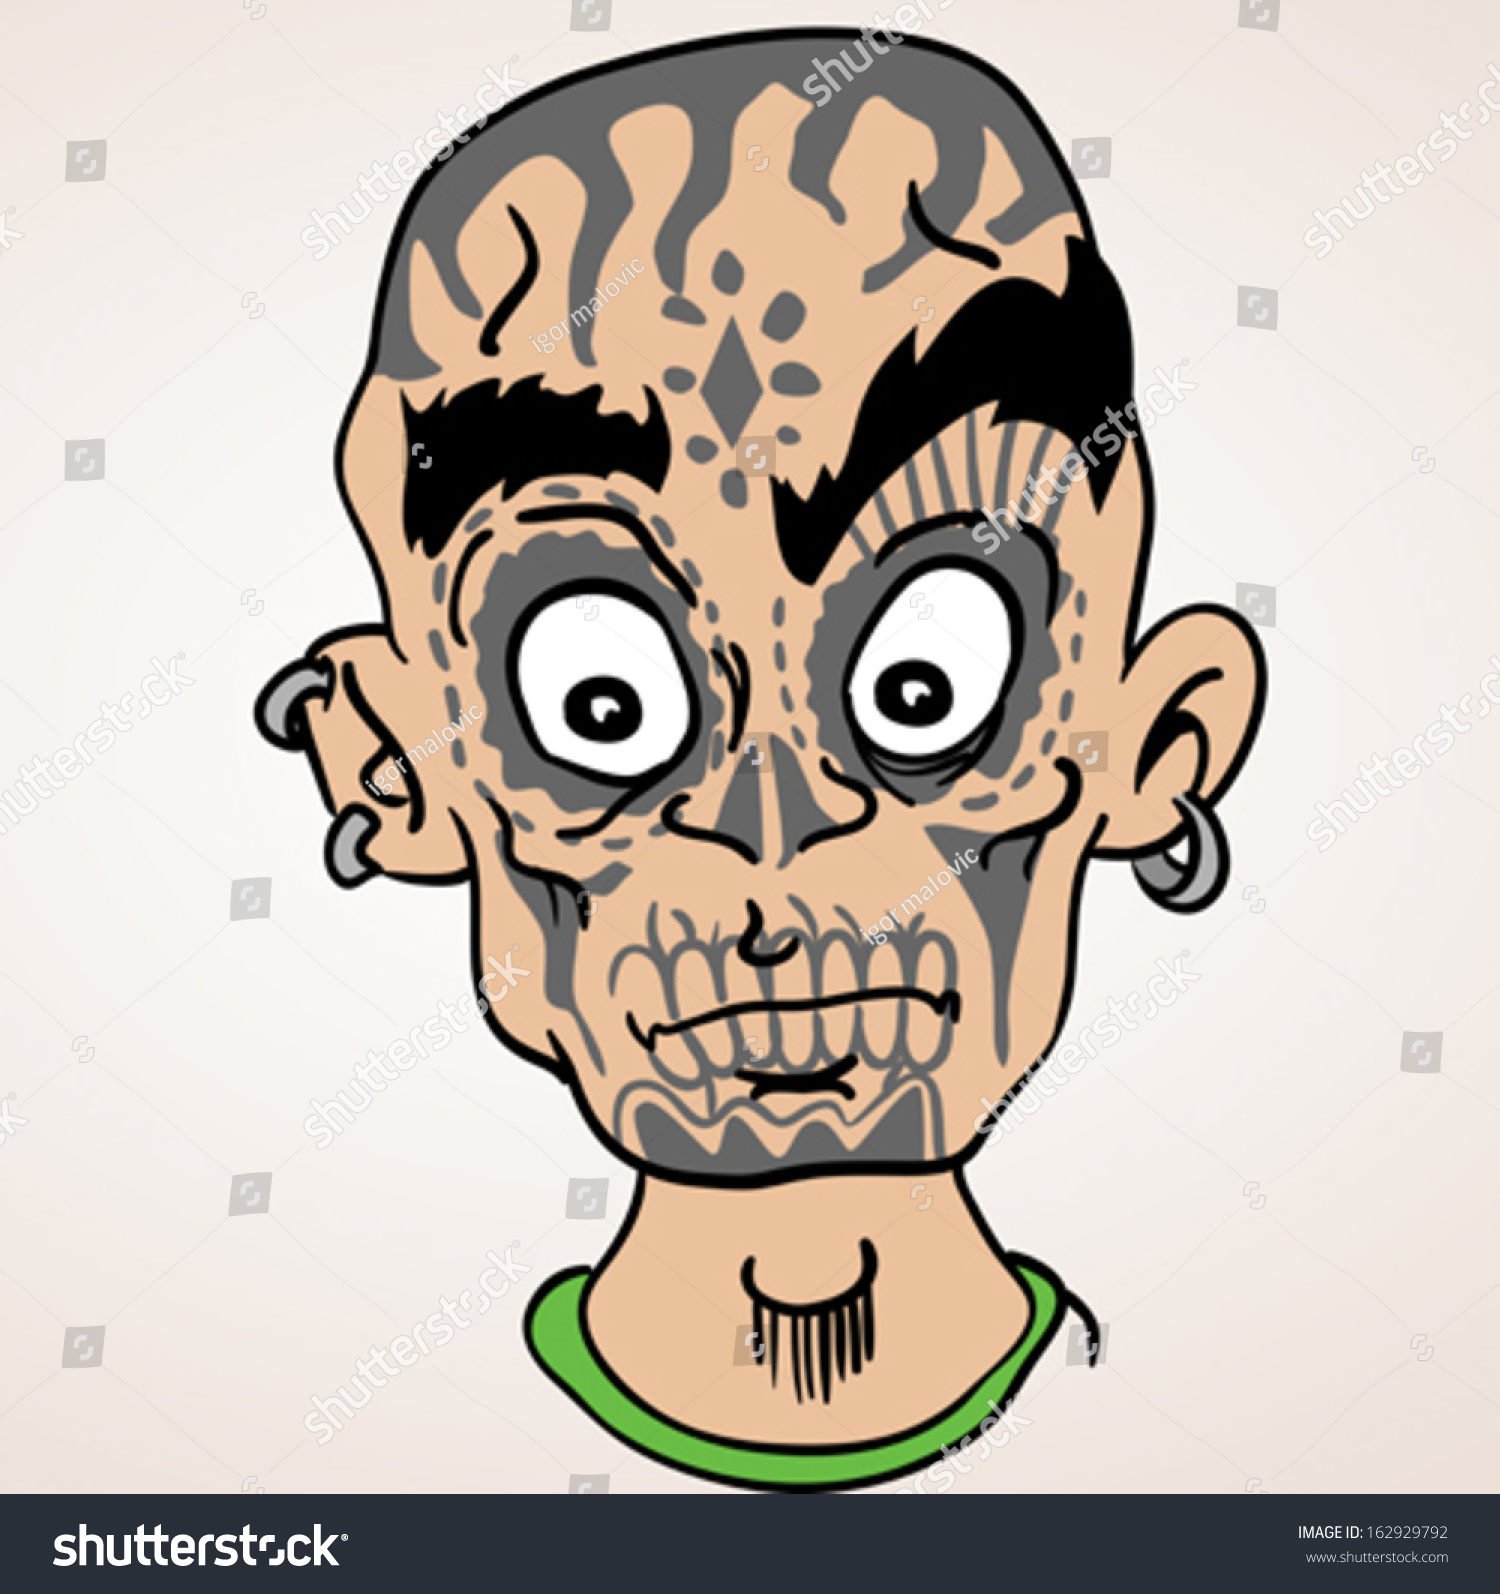 Download Cartoon Illustration Bald Boy Sugar Skull Stock Vector ...